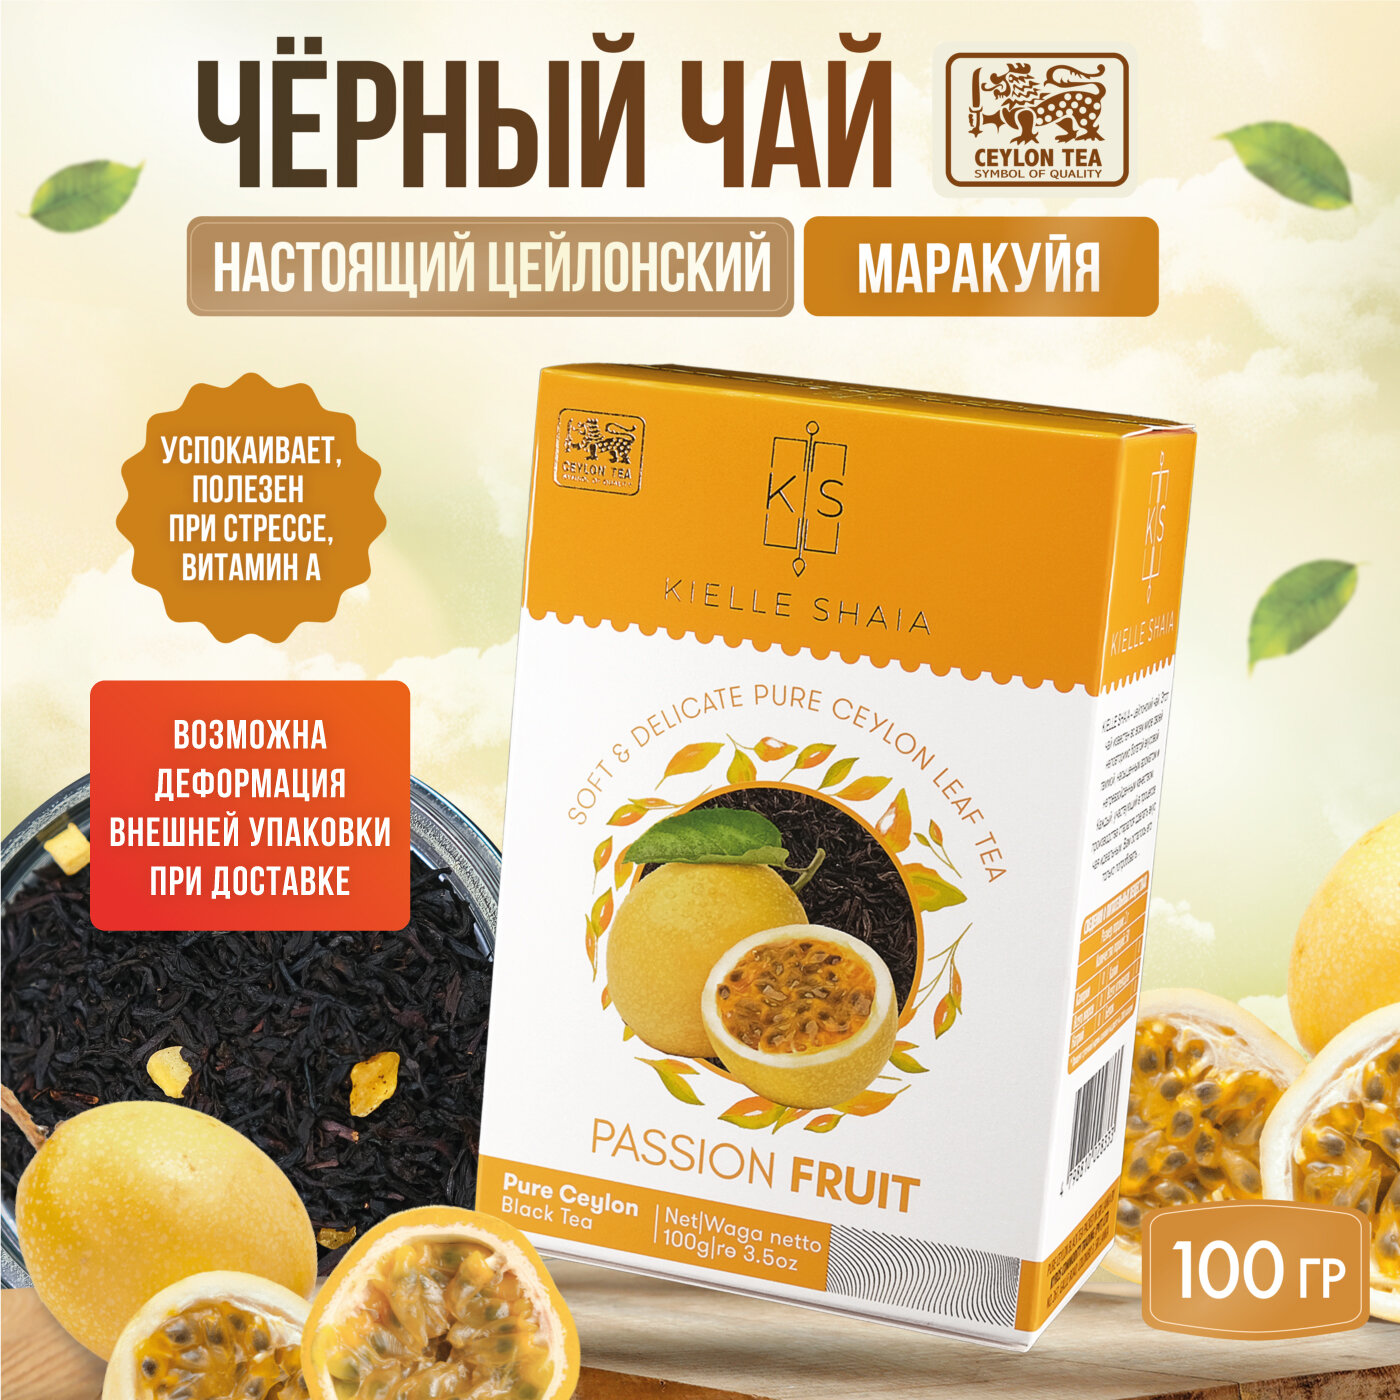 Чай фруктовый черный листовой цейлонский со вкусом маракуйя PASSION FRUIT KIELLE SHAIA, 100 г